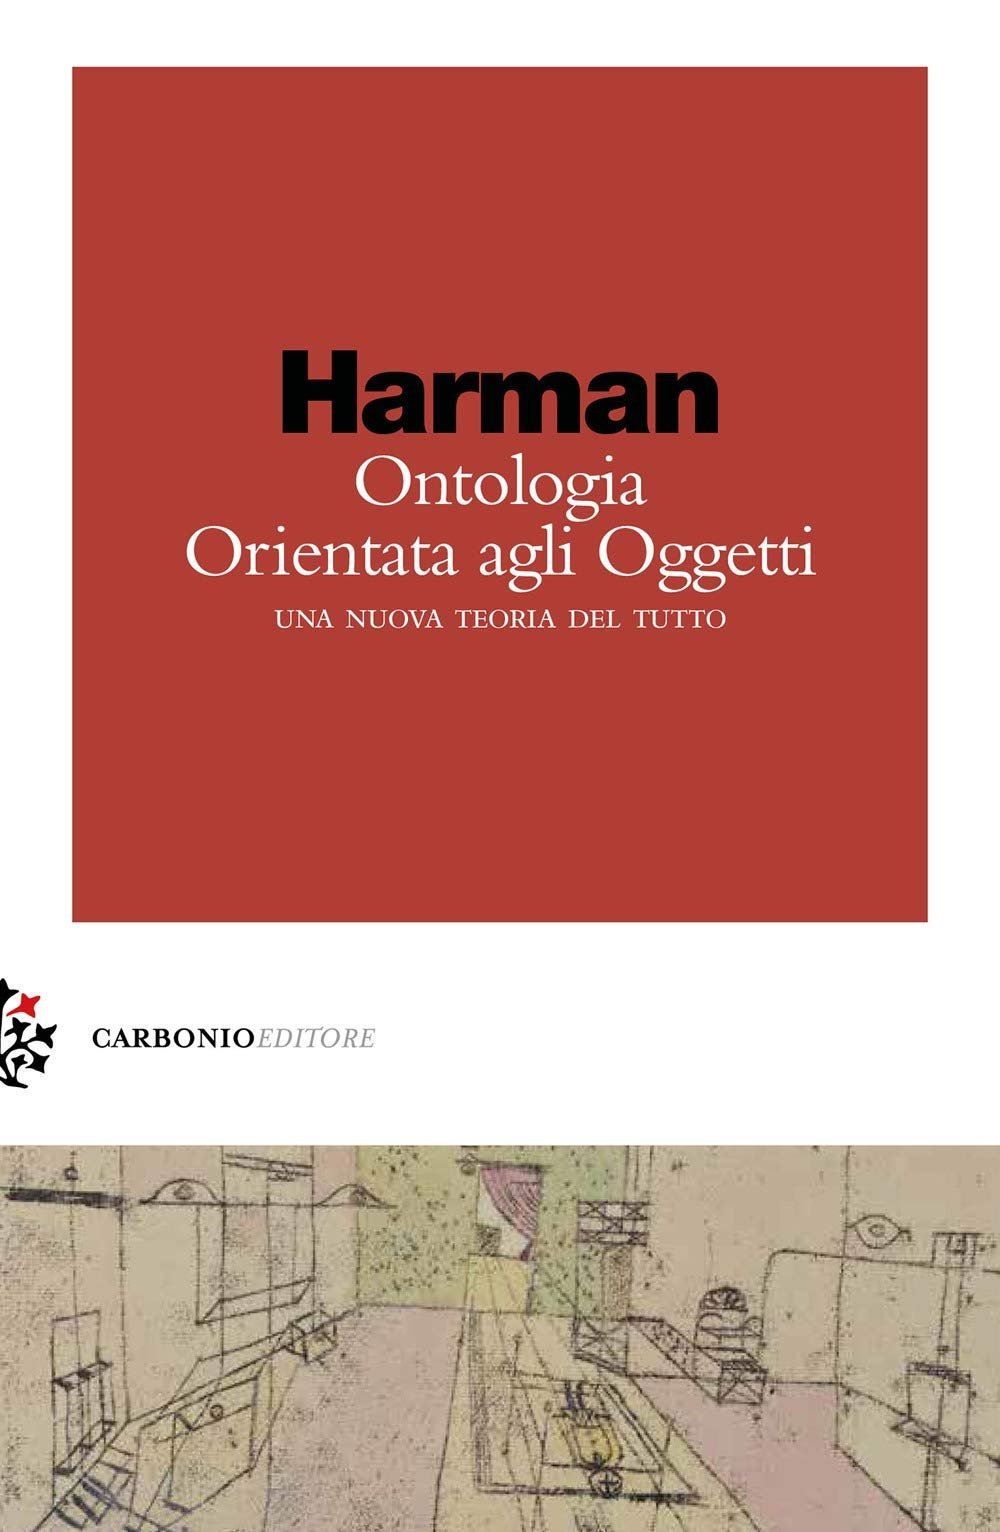 Graham Harman – Ontologia Orientata agli Oggetti. Una nuova teoria del tutto (Carbonio, Milano 2021)